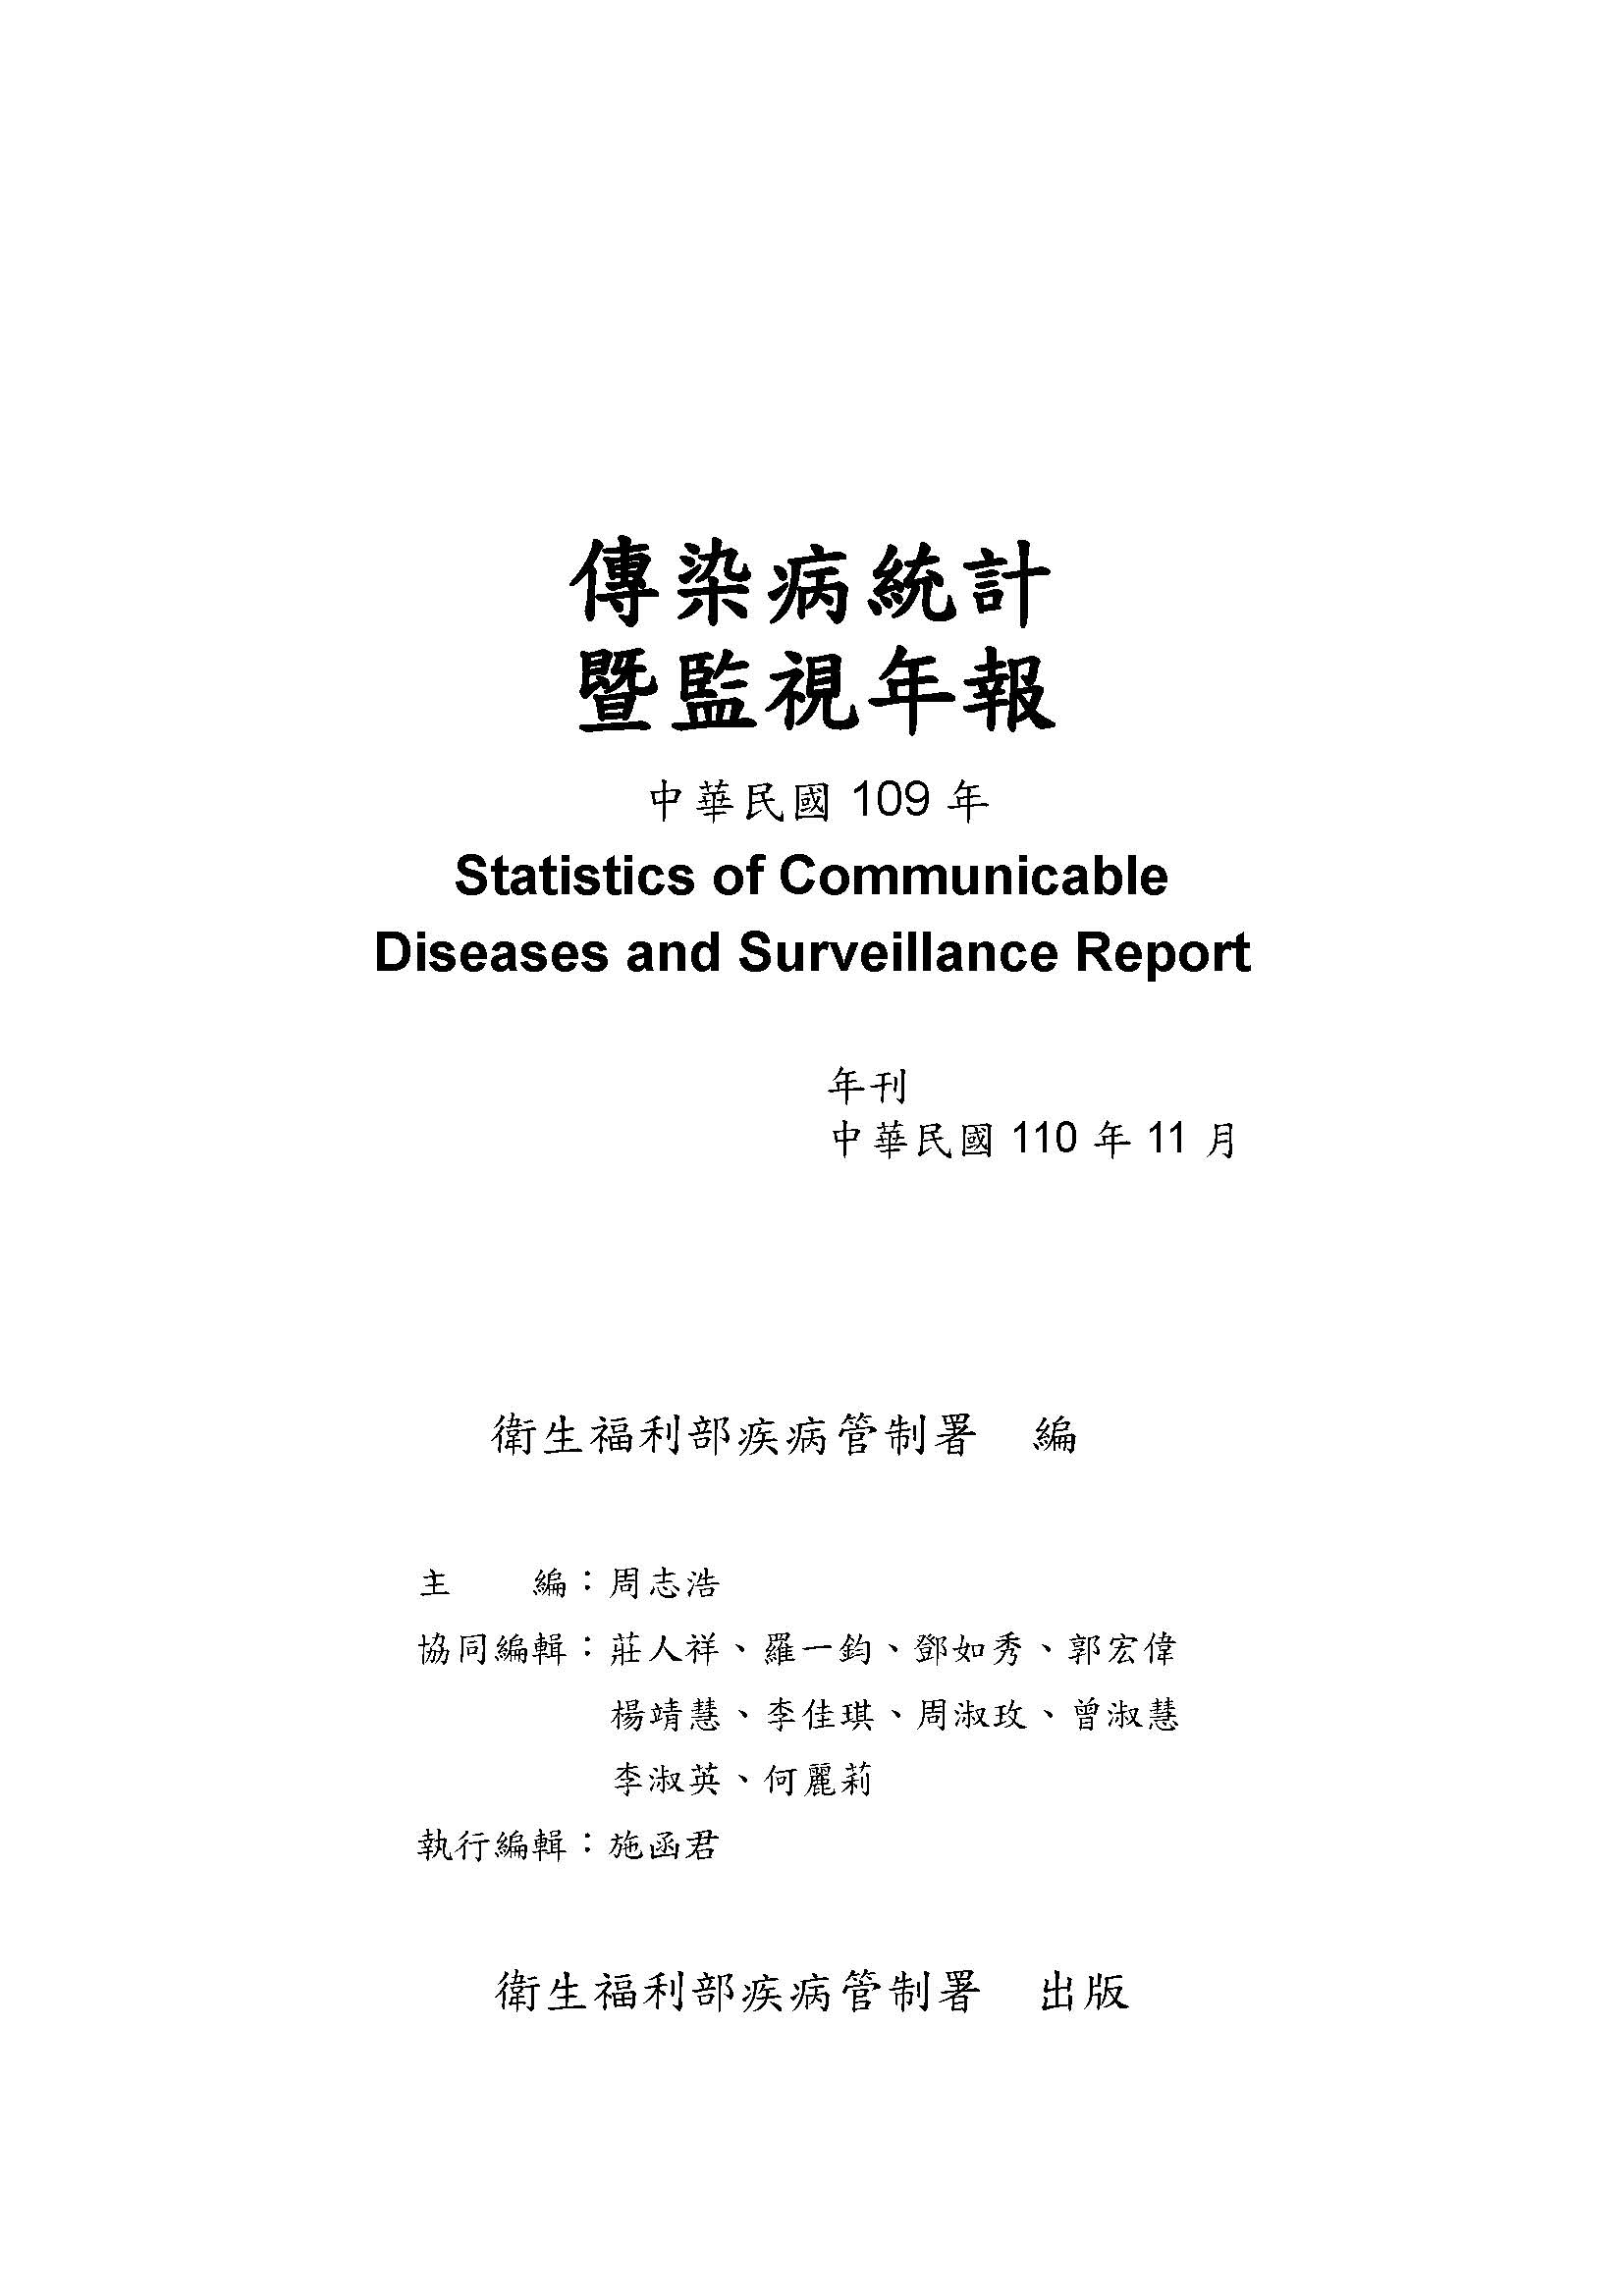 傳染病統計暨監視年報-109年(中文)